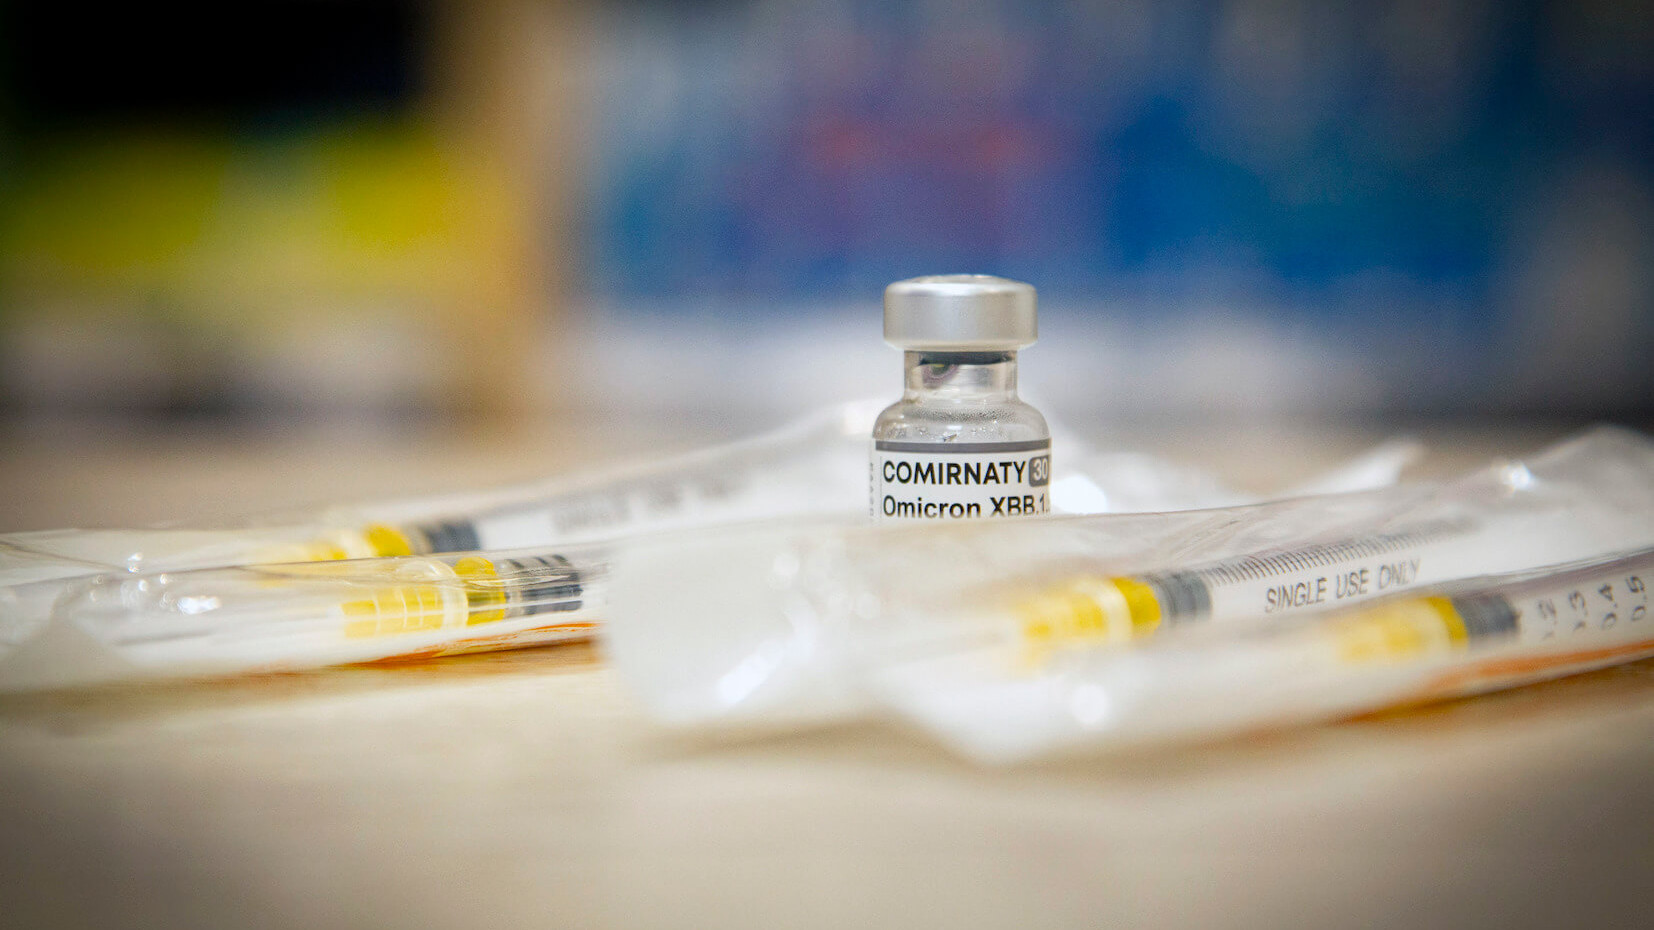 Impfstoff auf einem Tisch, daneben mehrere verpackte Spritzen